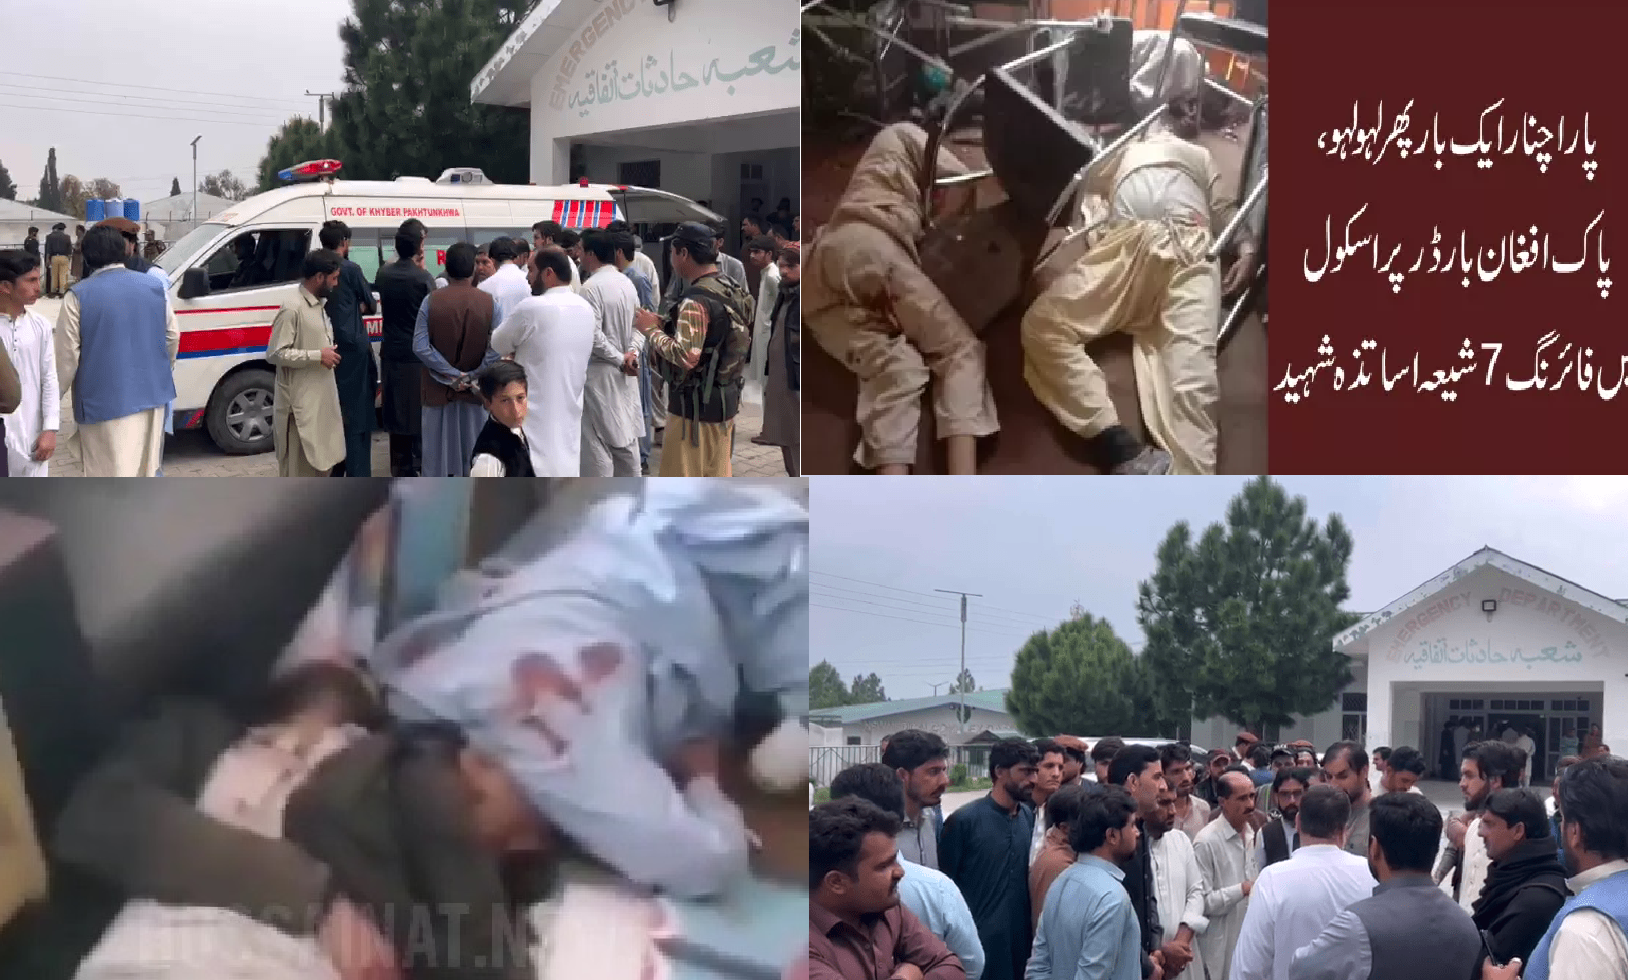 ارهابيون تكفيريون يقتلون 7 معلمين شيعة في مدينة "باراجنار" الباكستانية